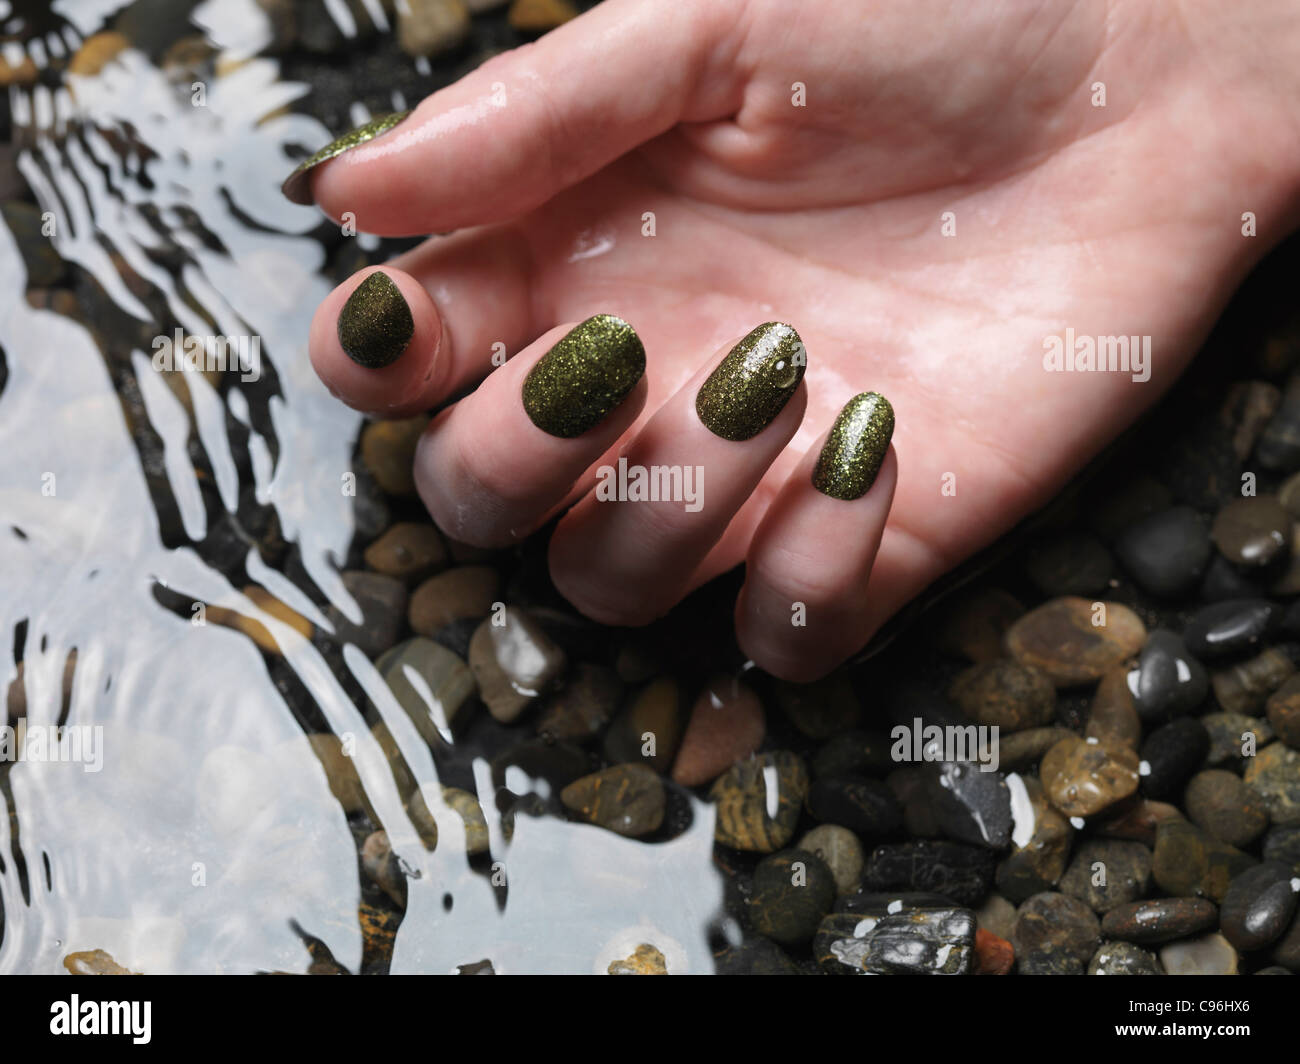 Lizenz erhältlich unter MaximImages.com Nahaufnahme der Frauenhand mit grünem, feinem nagellack im Wasser Stockfoto